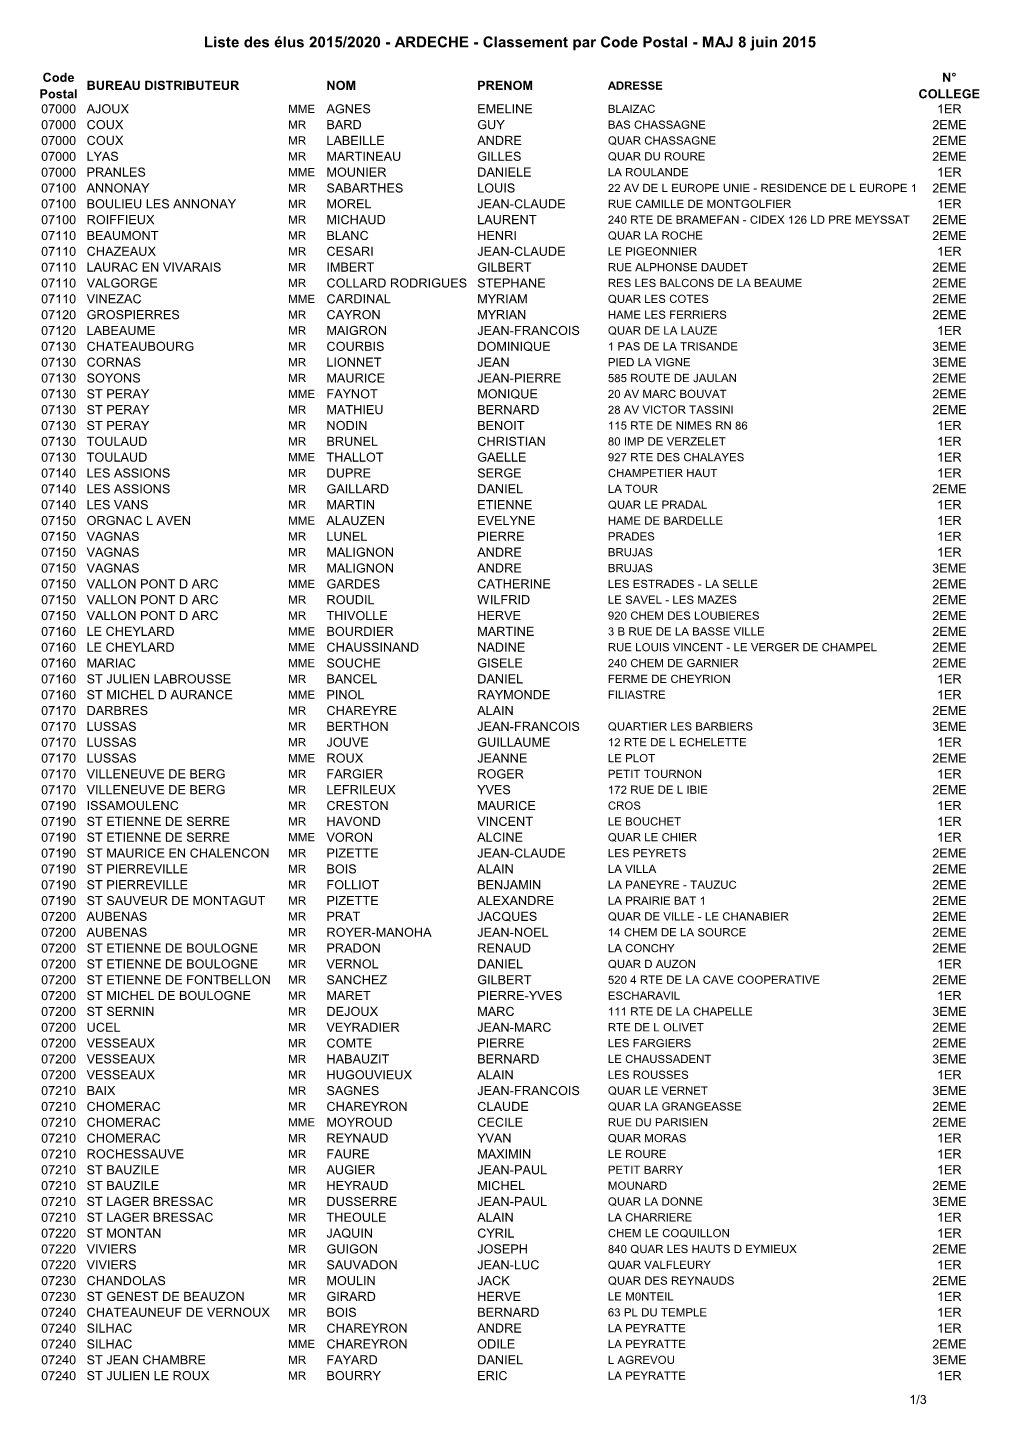 (Liste Des Élus 2015-2020 Ardèche Classement Par